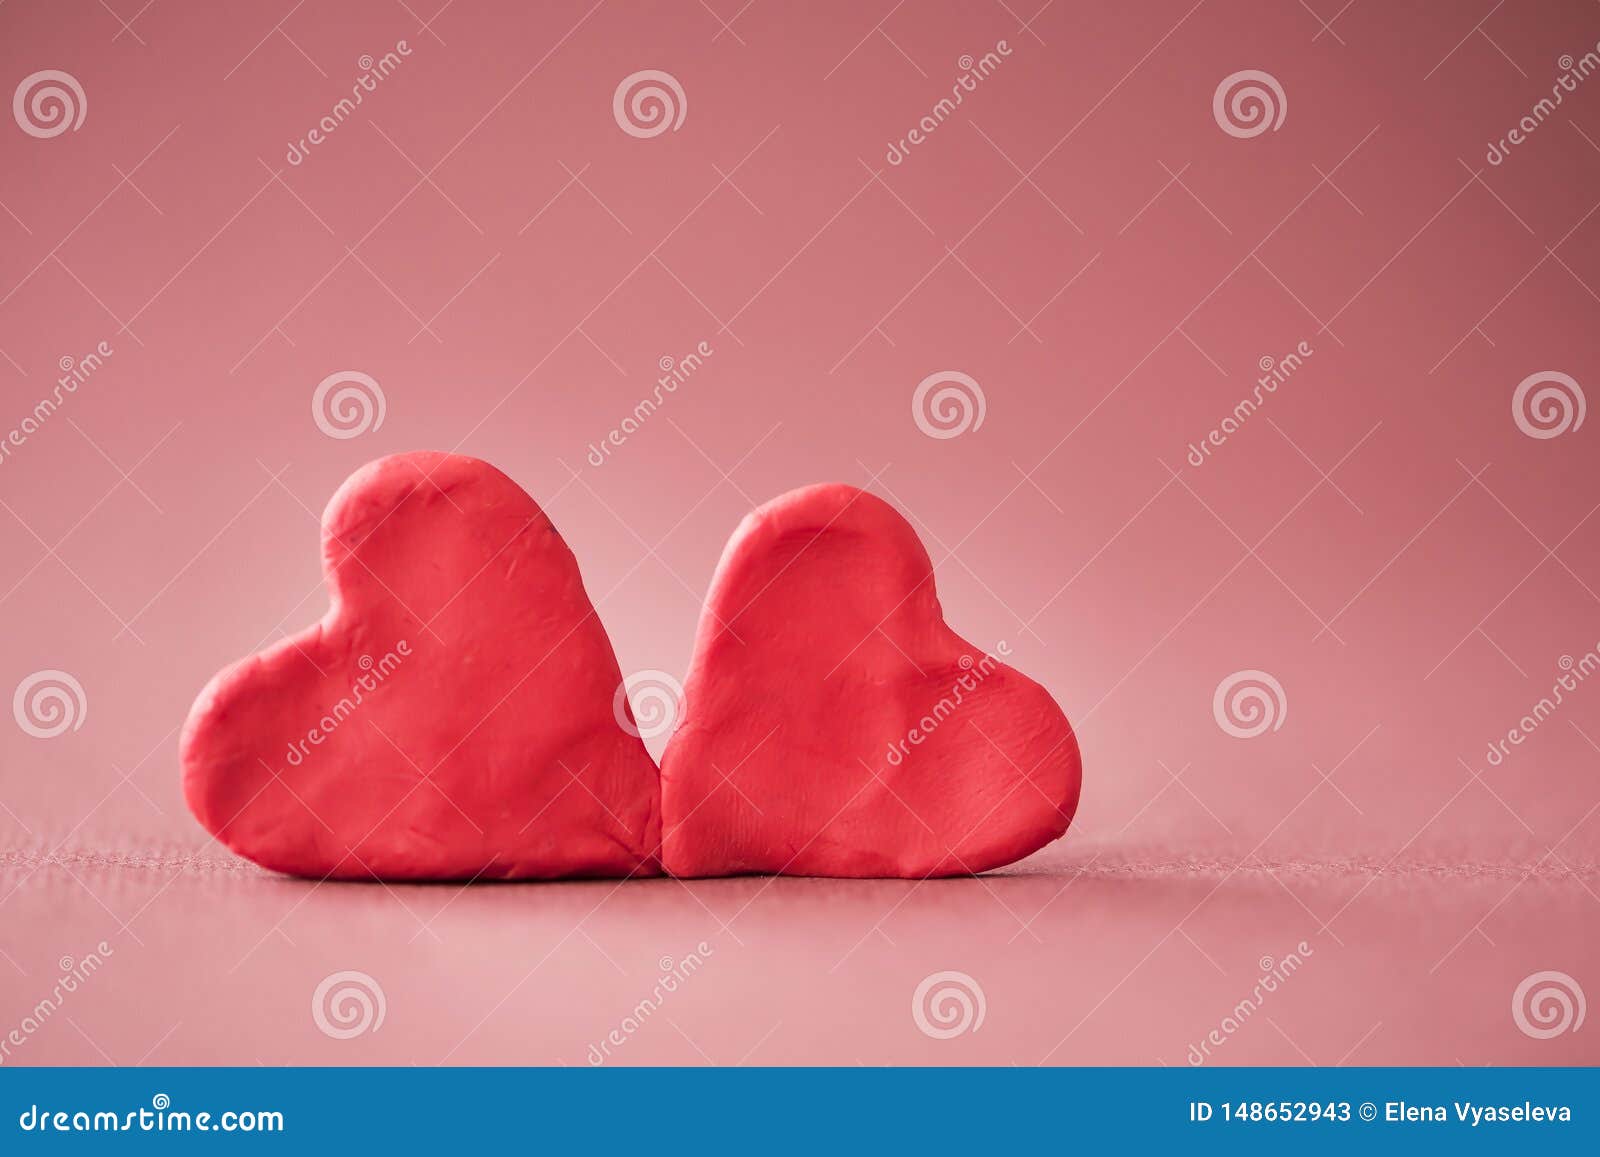 Сердце из пластилина. Пластилиновое сердечко. Сердце пластилин. Макет сердца из пластилина.